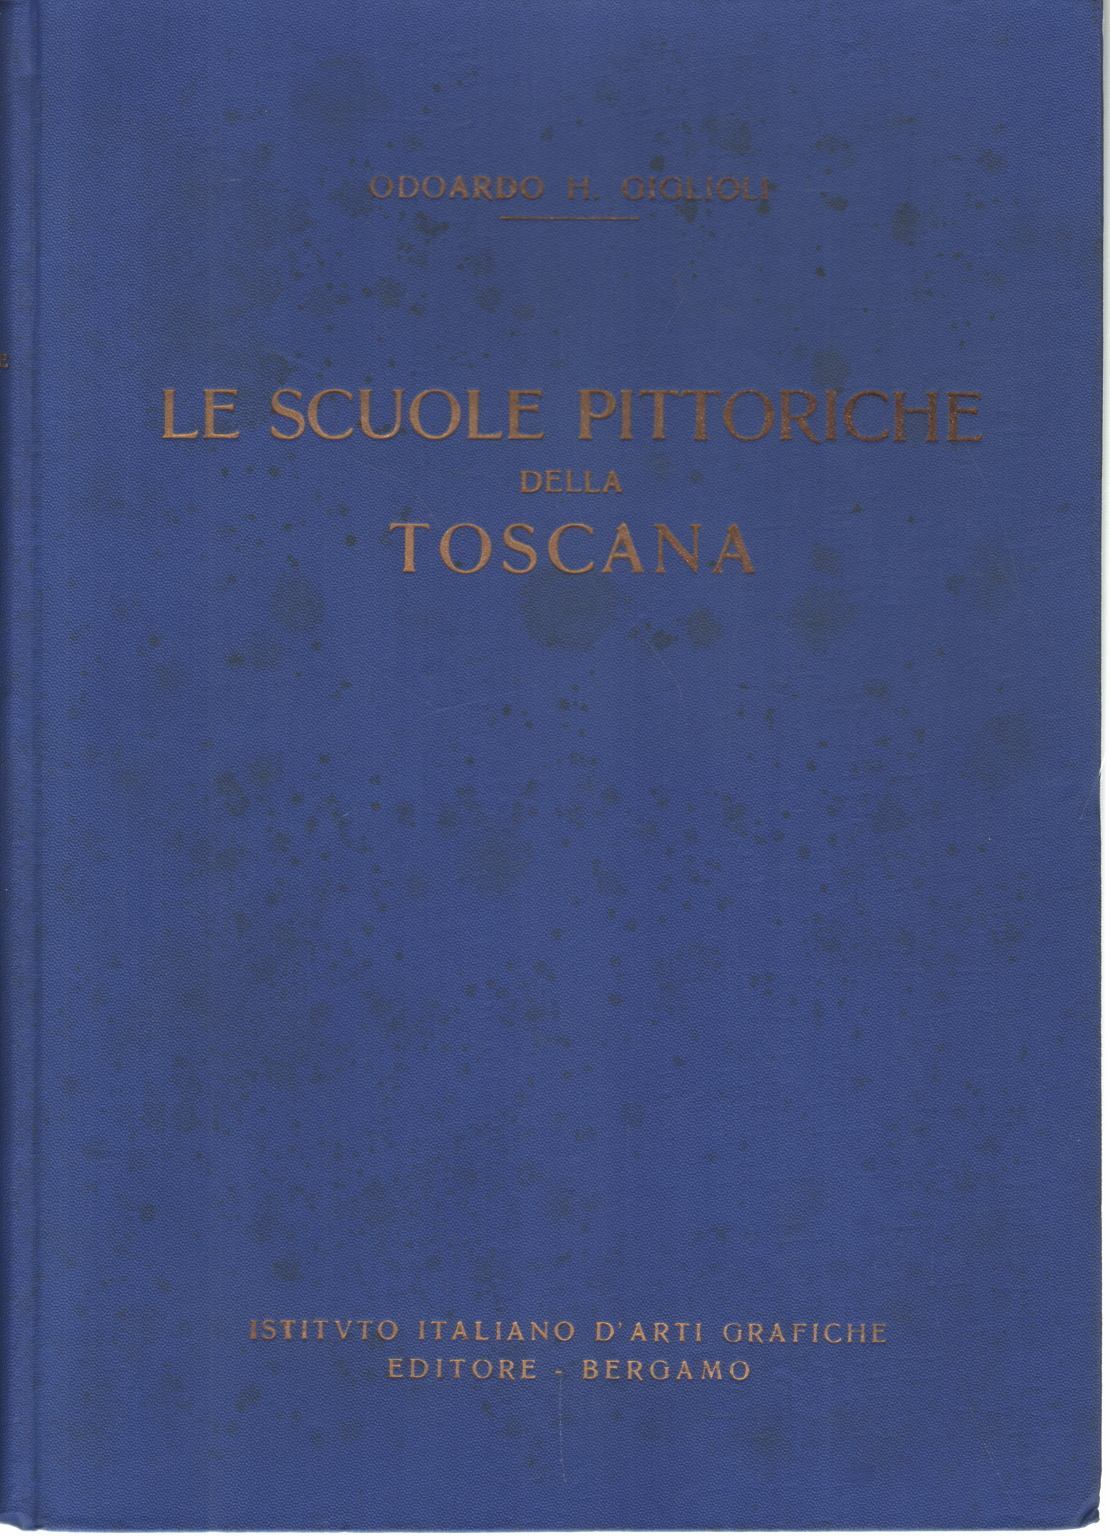 Las escuelas de la Toscana (S. XIV - XV), Odoardo H. Giglioli